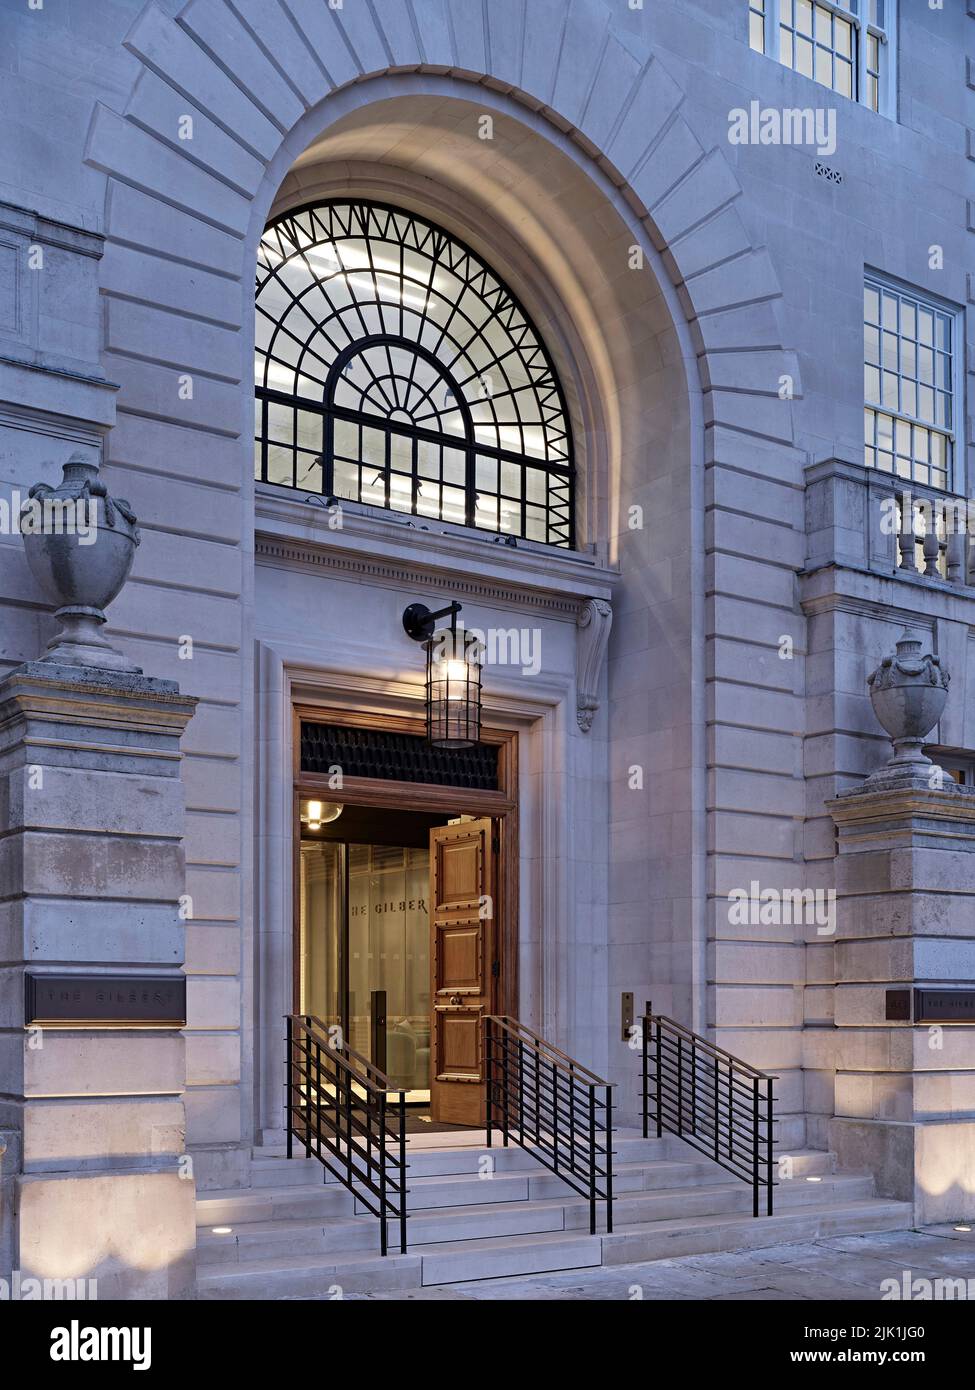 Entrée principale au crépuscule. The Gilbert & One Lackington, Londres, Royaume-Uni. Architecte: Stiff + Trevillion Architects, 2021. Banque D'Images